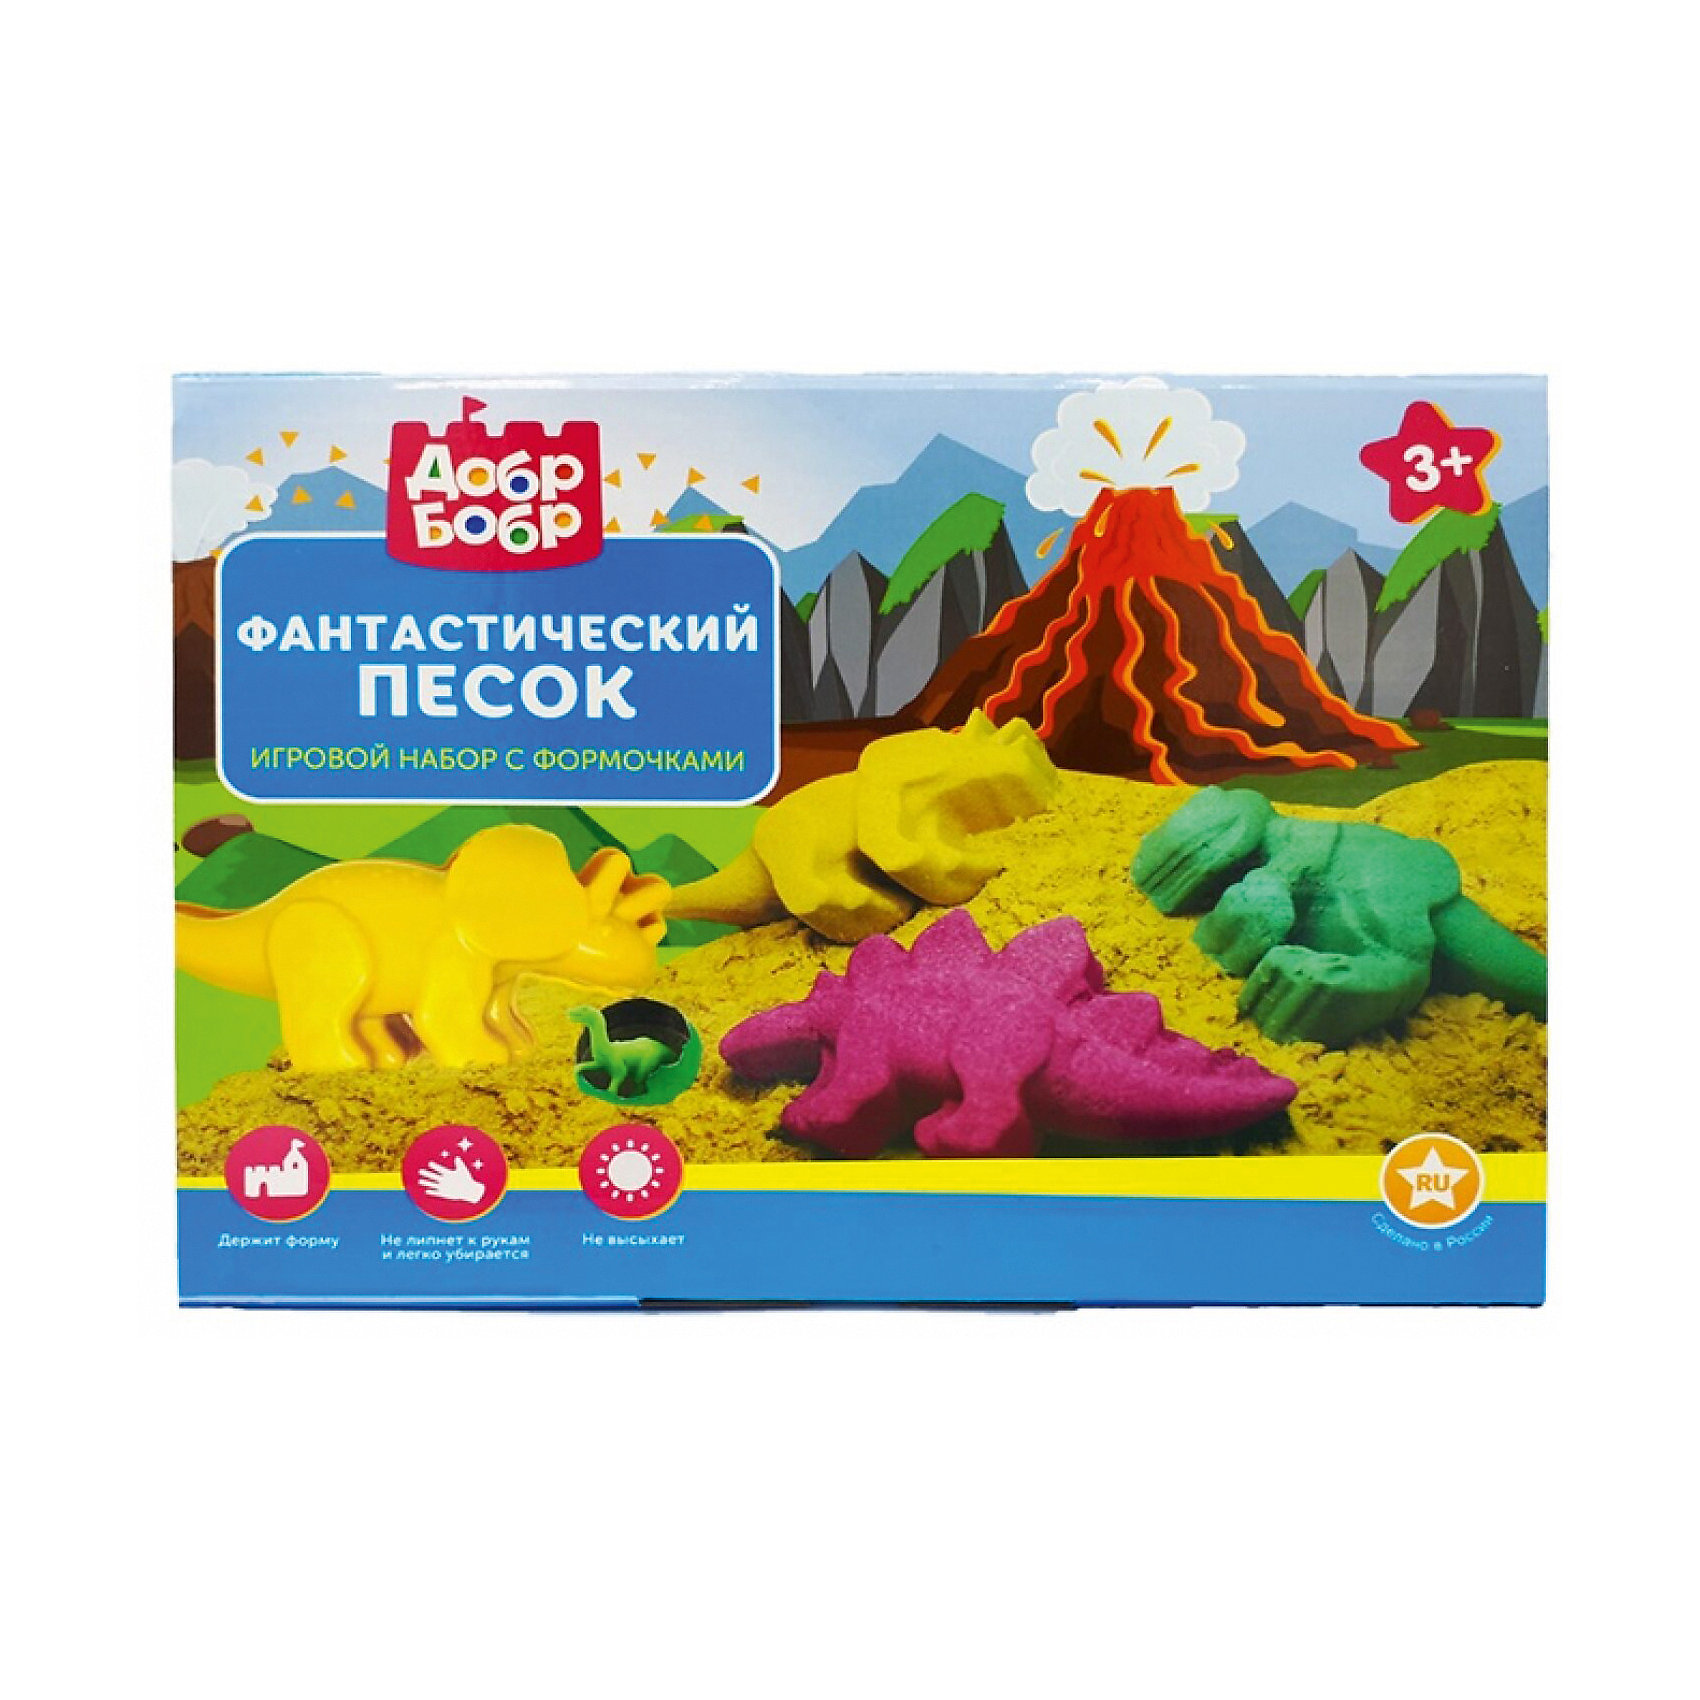 фото Фантастический песок 1toy, набор 3 цвета, 3 формочки, растущие динозавры